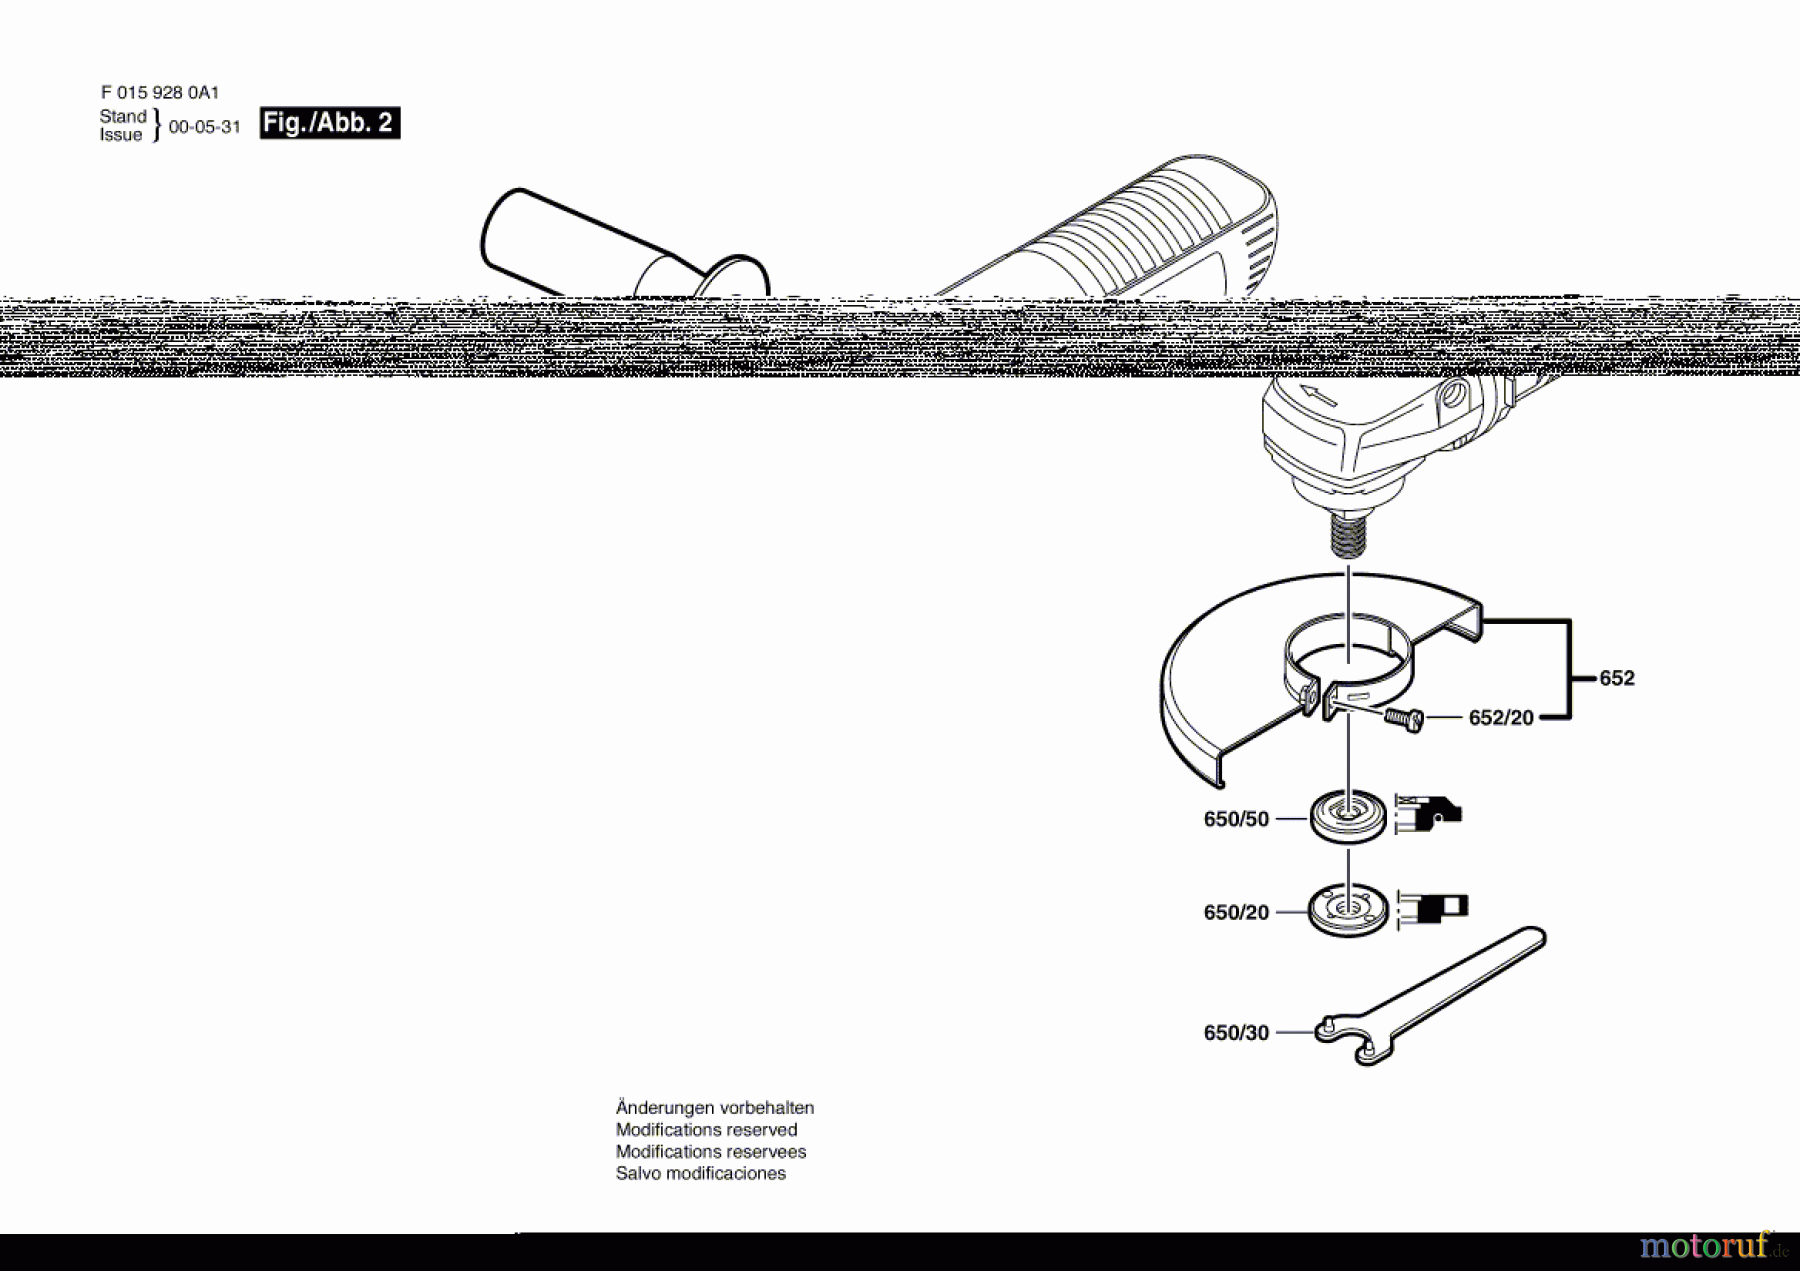  Bosch Werkzeug Winkelschleifer 9280 Seite 2